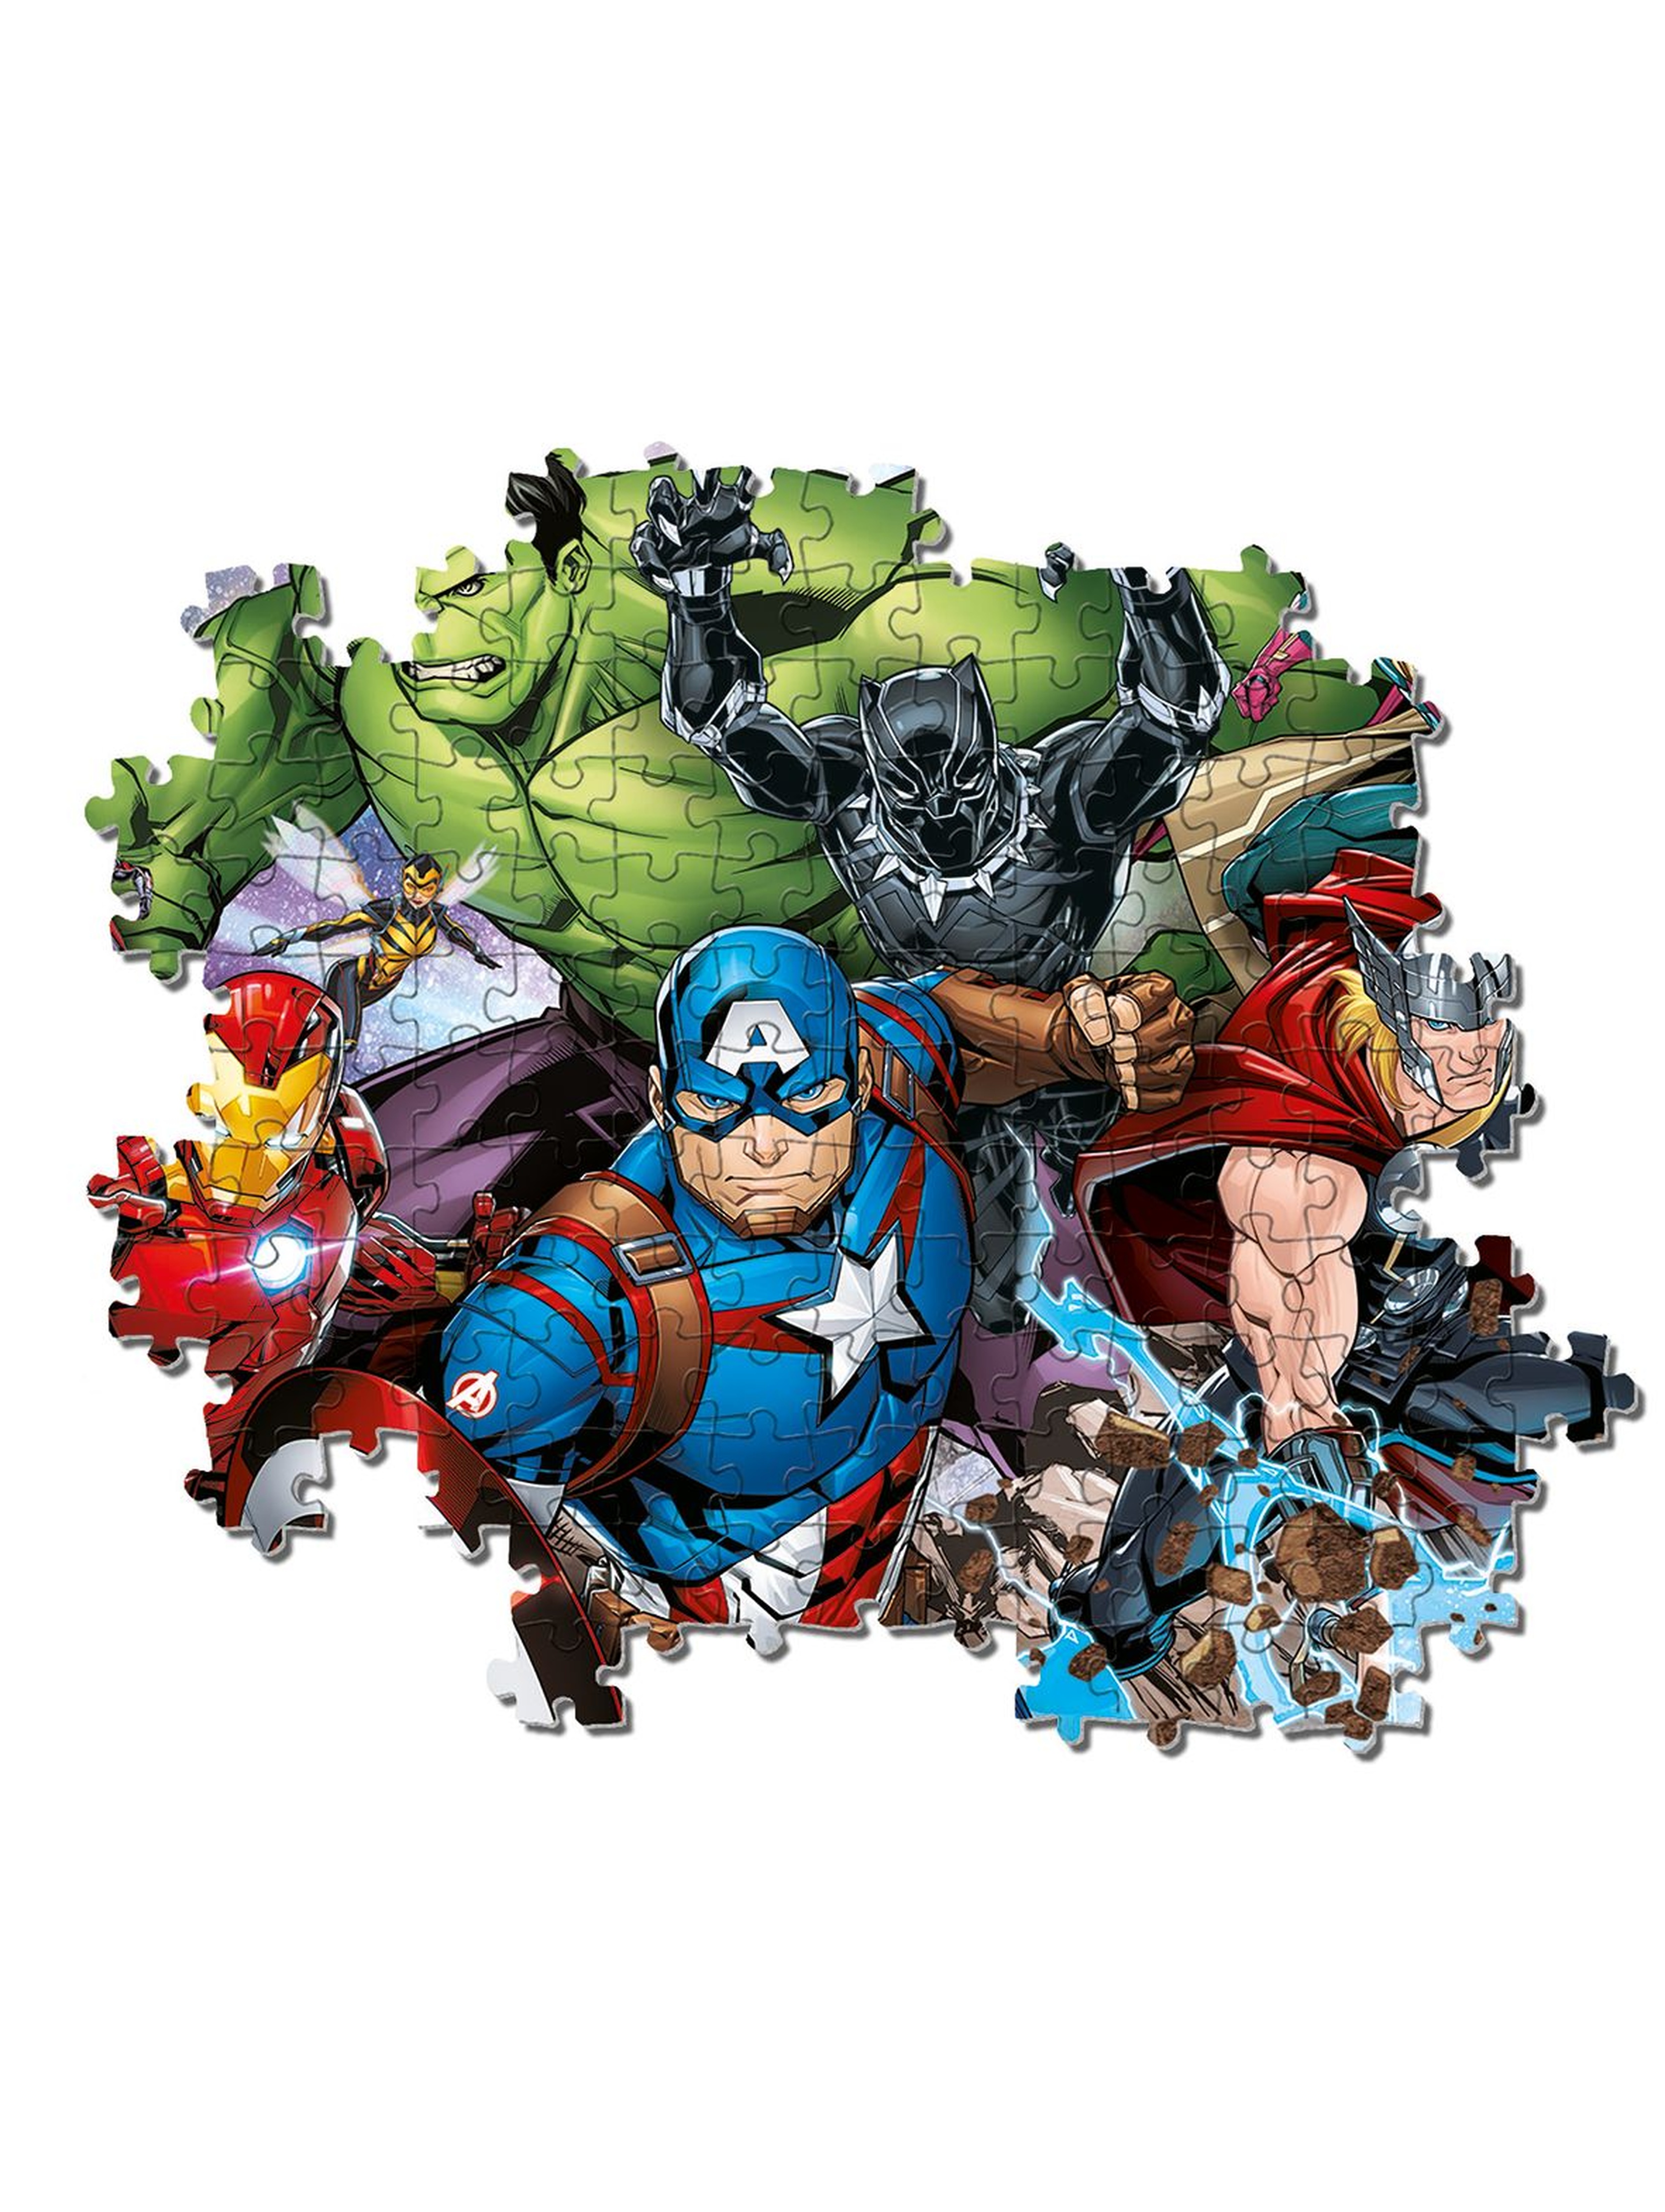 Puzzle Super Color Avengers  - 180 elementów wiek 7+